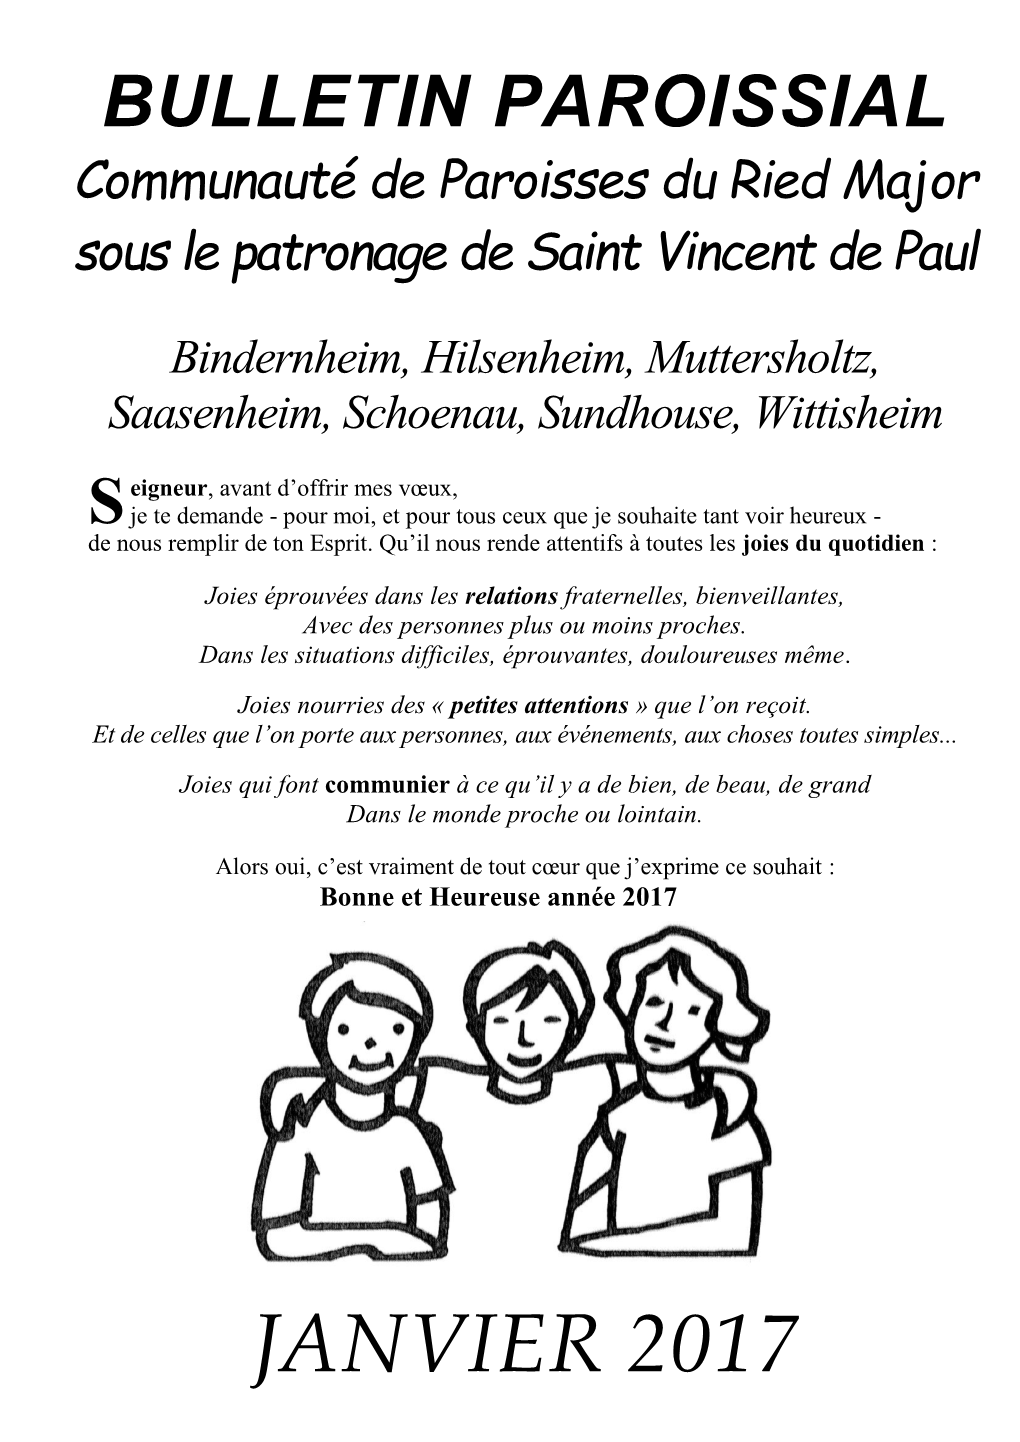 BULLETIN PAROISSIAL Communauté De Paroisses Du Ried Major Sous Le Patronage De Saint Vincent De Paul